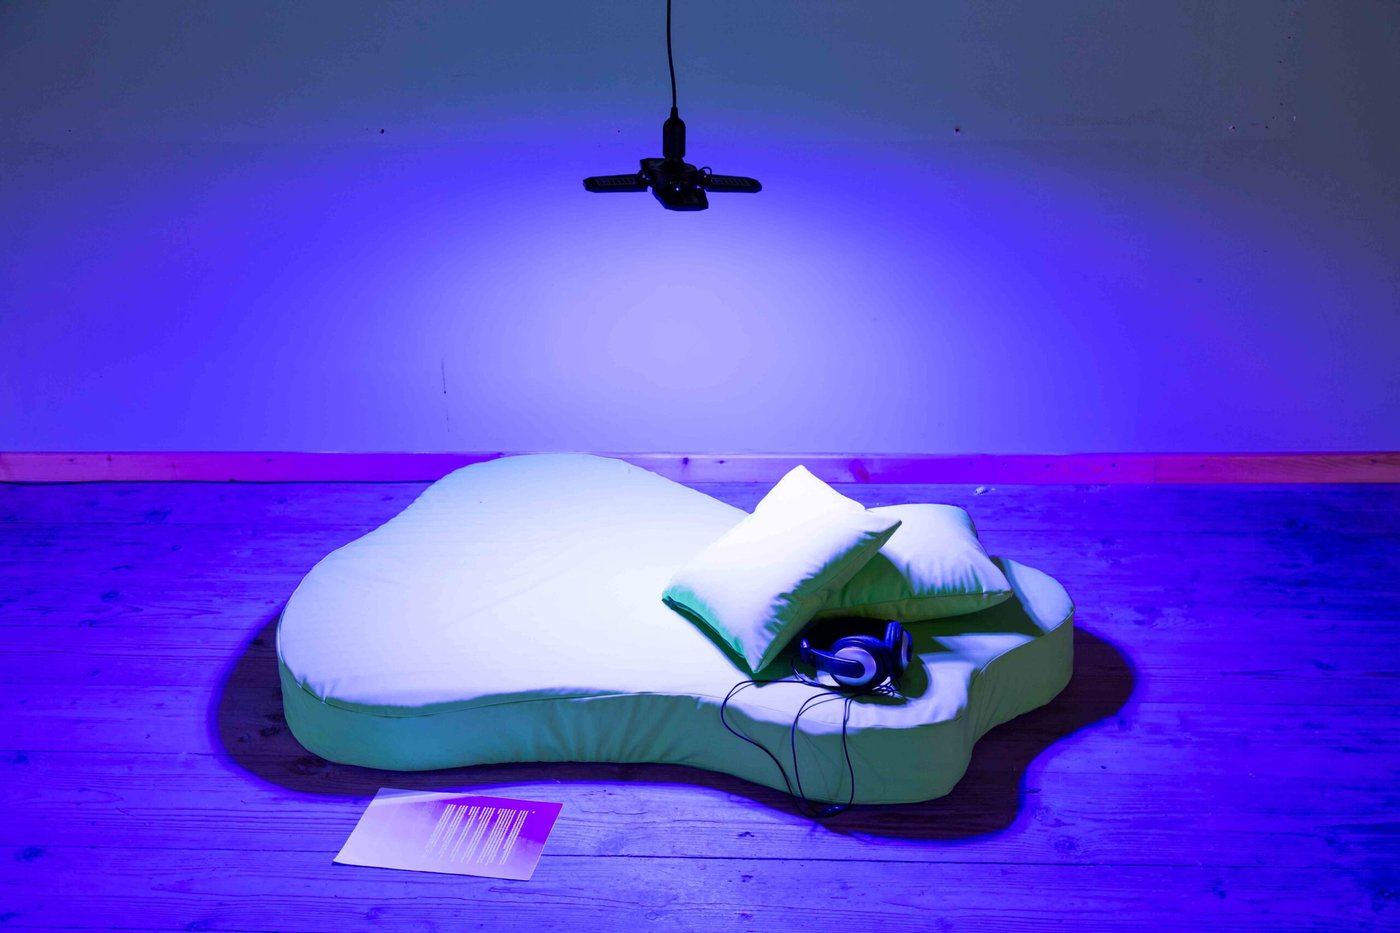 Matratze und Polster am Boden in blauem Licht mit Kopfhörern